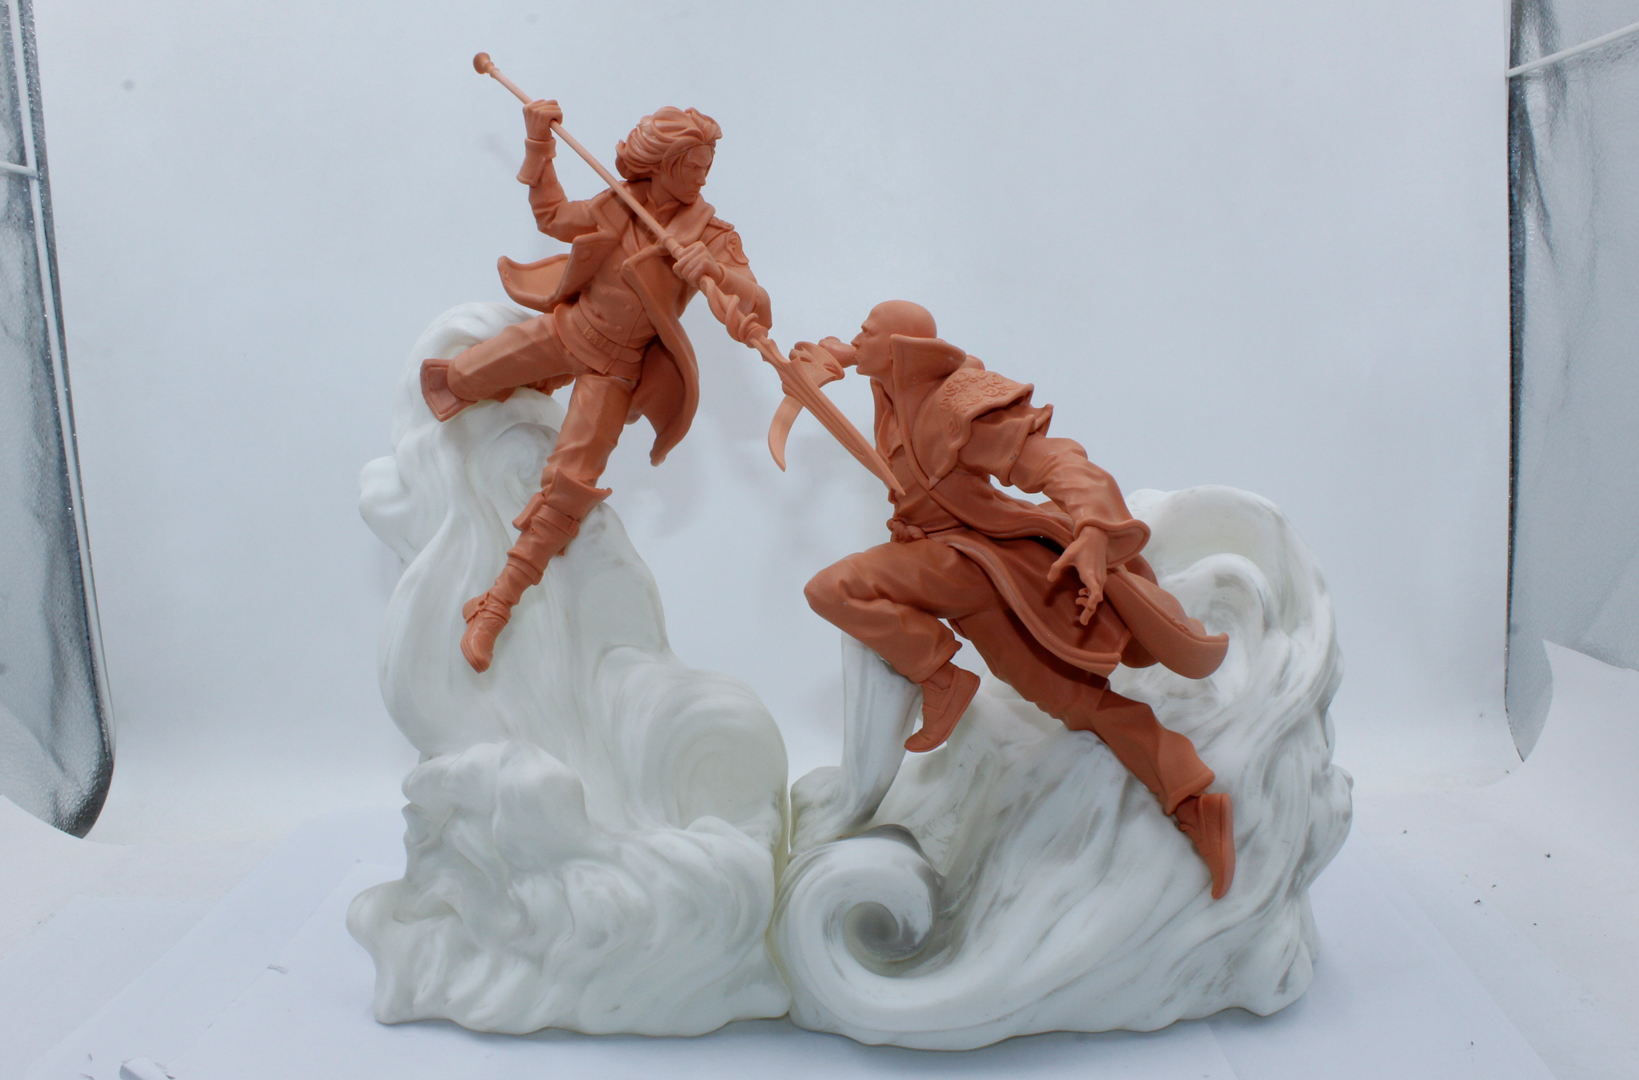 Stormlight Premium Miniatures - Prototipo inicial de la estatua "Clashing Storms" (los materiales no son definitivos)